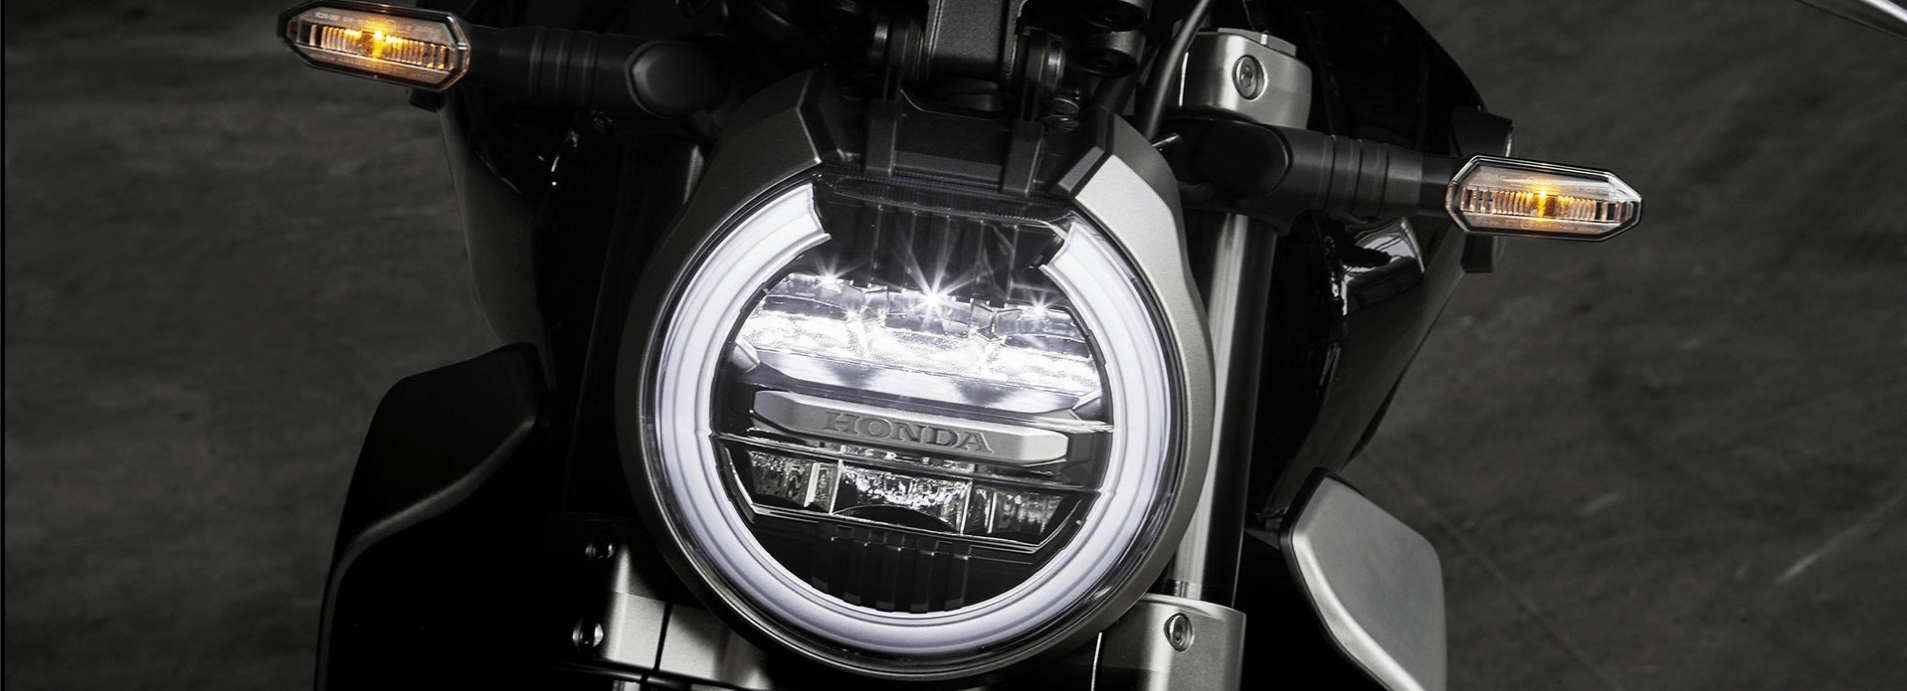 Honda CB 1000R 2023